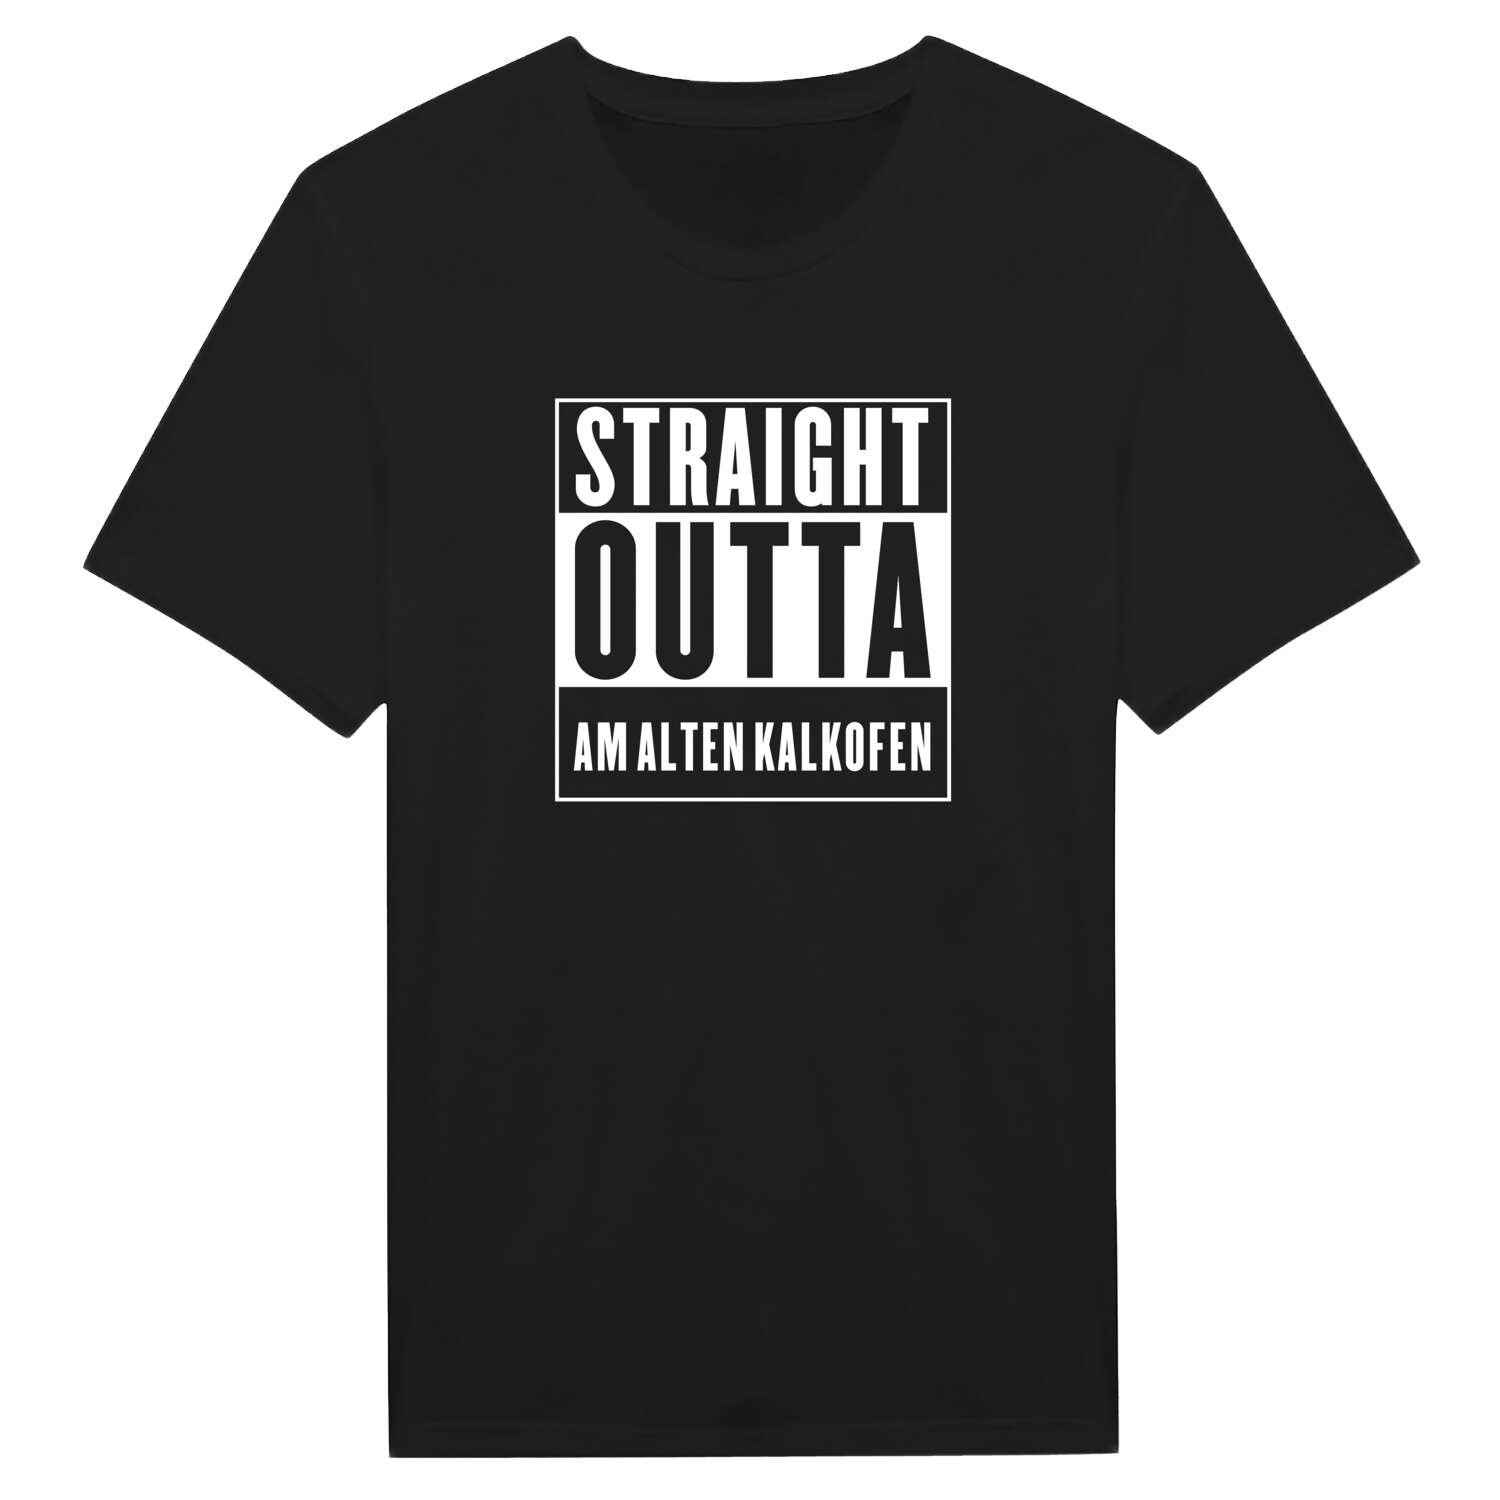 Am alten Kalkofen T-Shirt »Straight Outta«